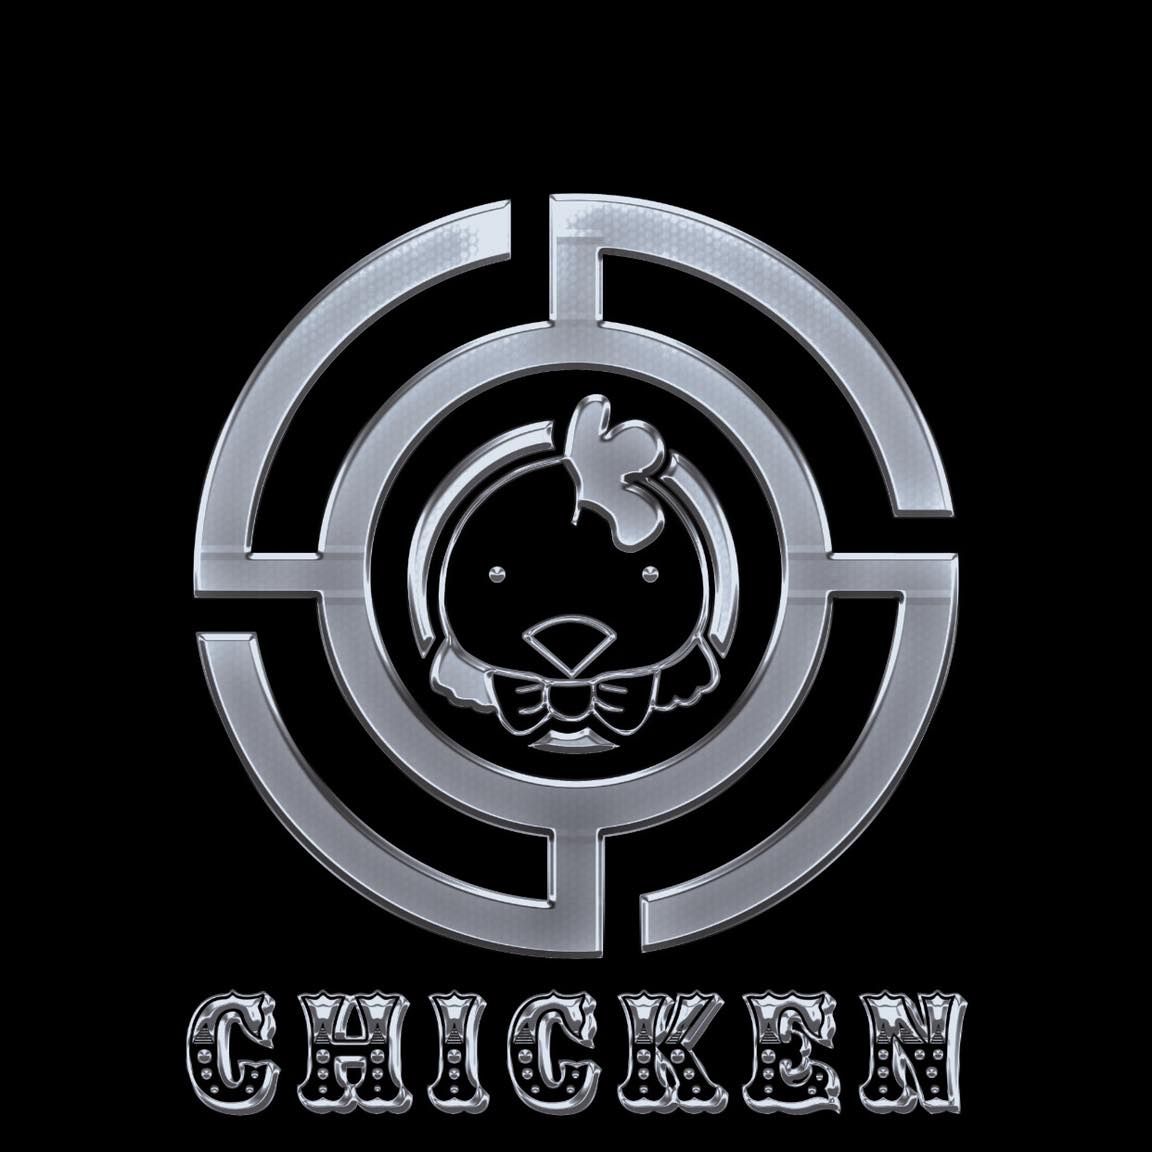 ဒေါင်းလုပ် Sợ Lắm 2021 - Chicken X Redmoon 2k Remix